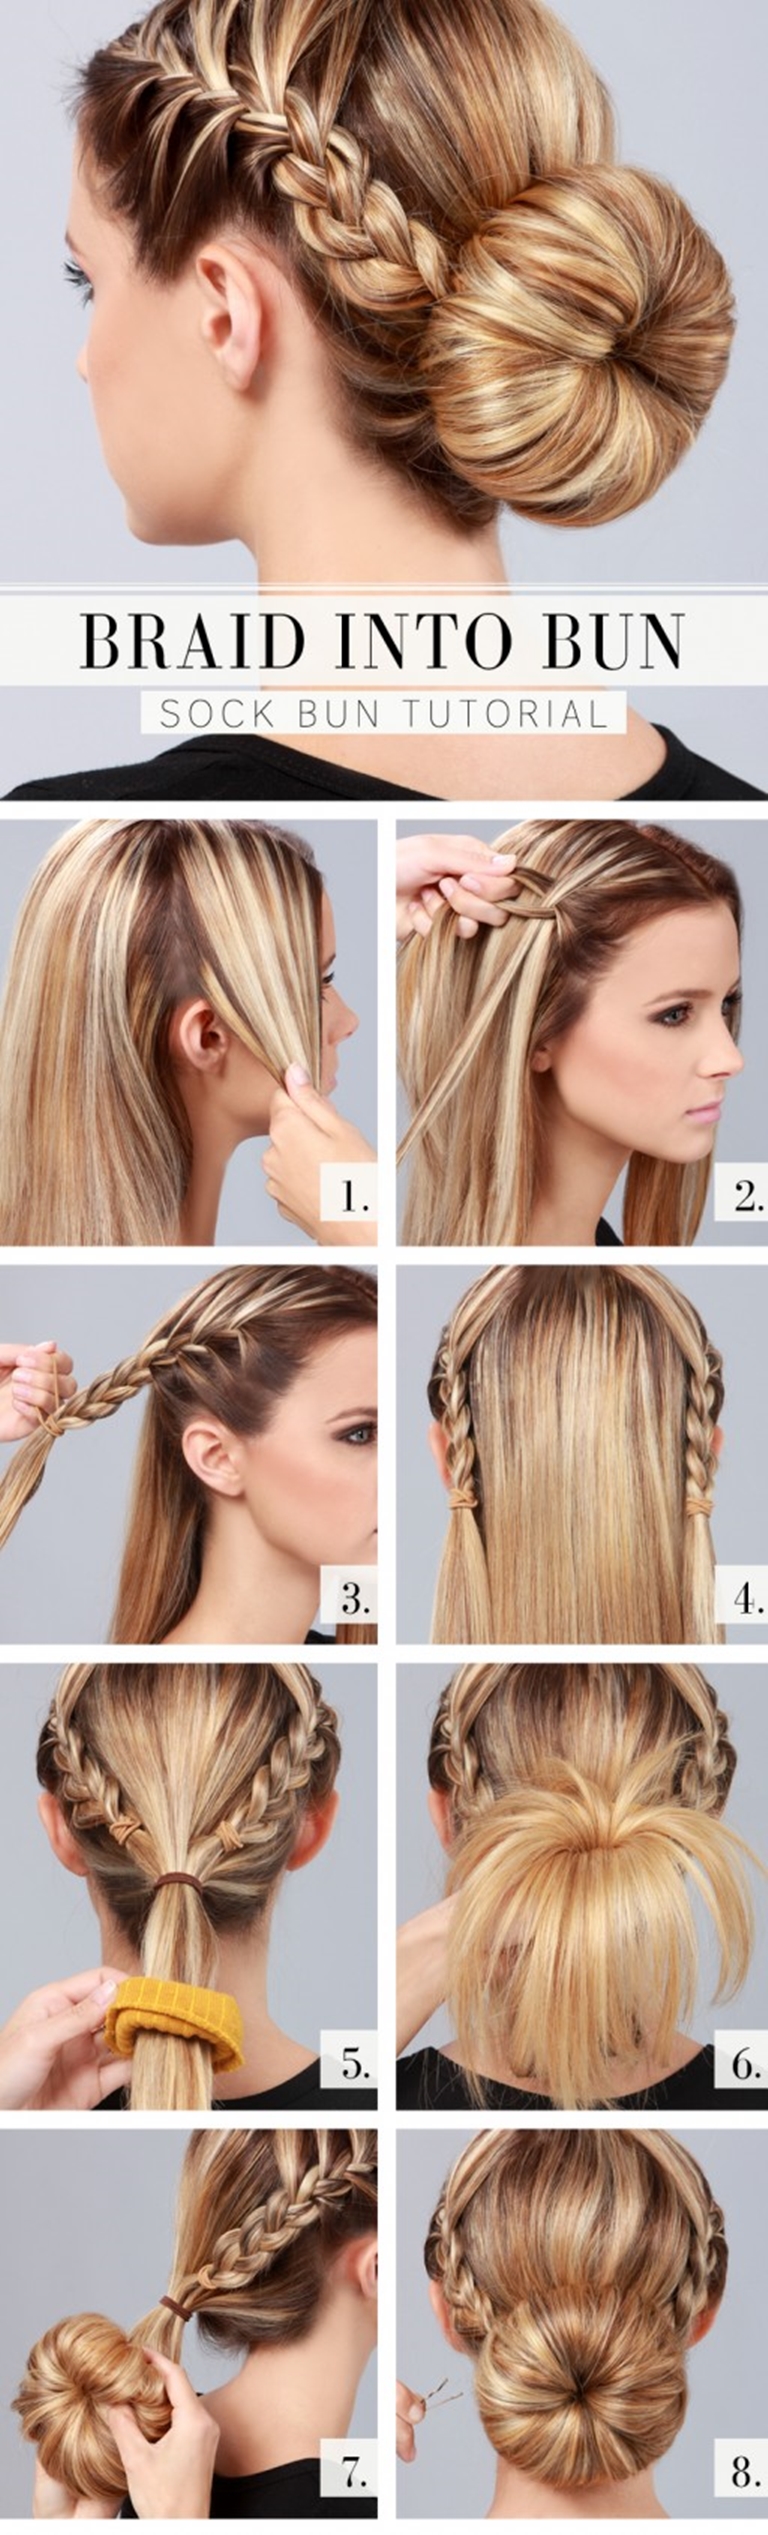 braid-into-bun-hair-style-L